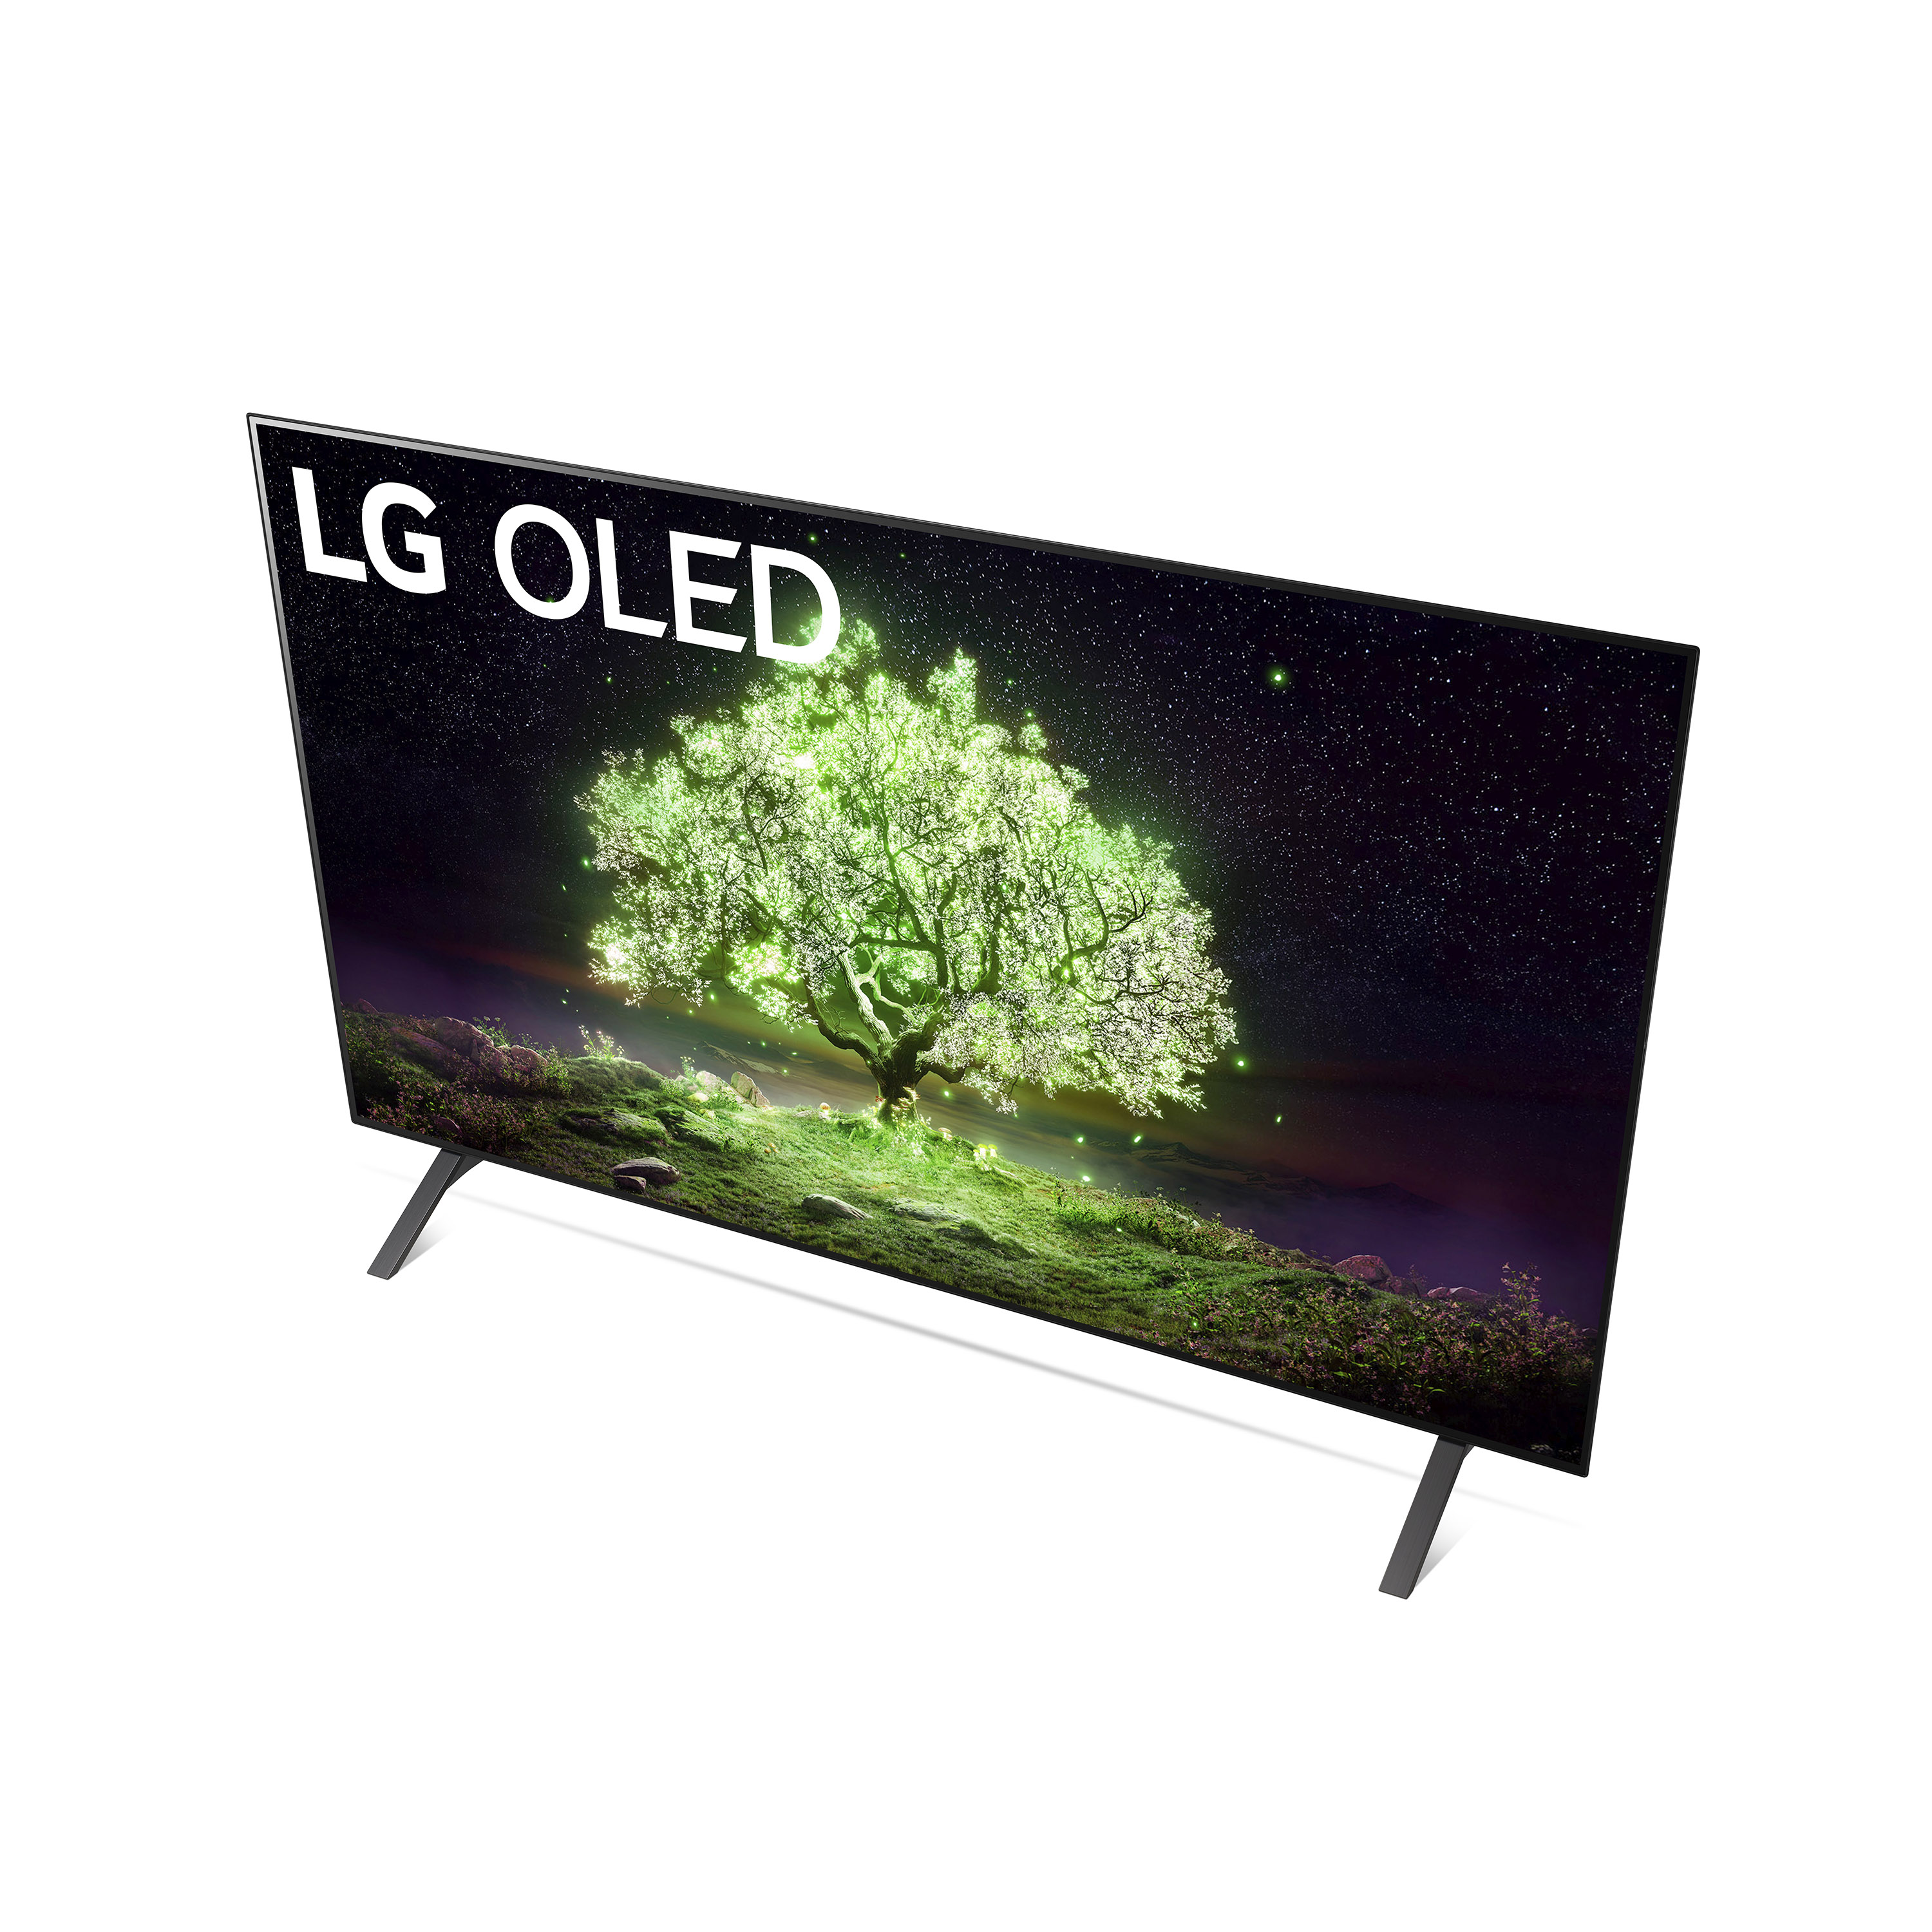 LG 65" Class 4K UHD Smart TV OLED A1 Series OLED65A1PUA - image 11 of 29